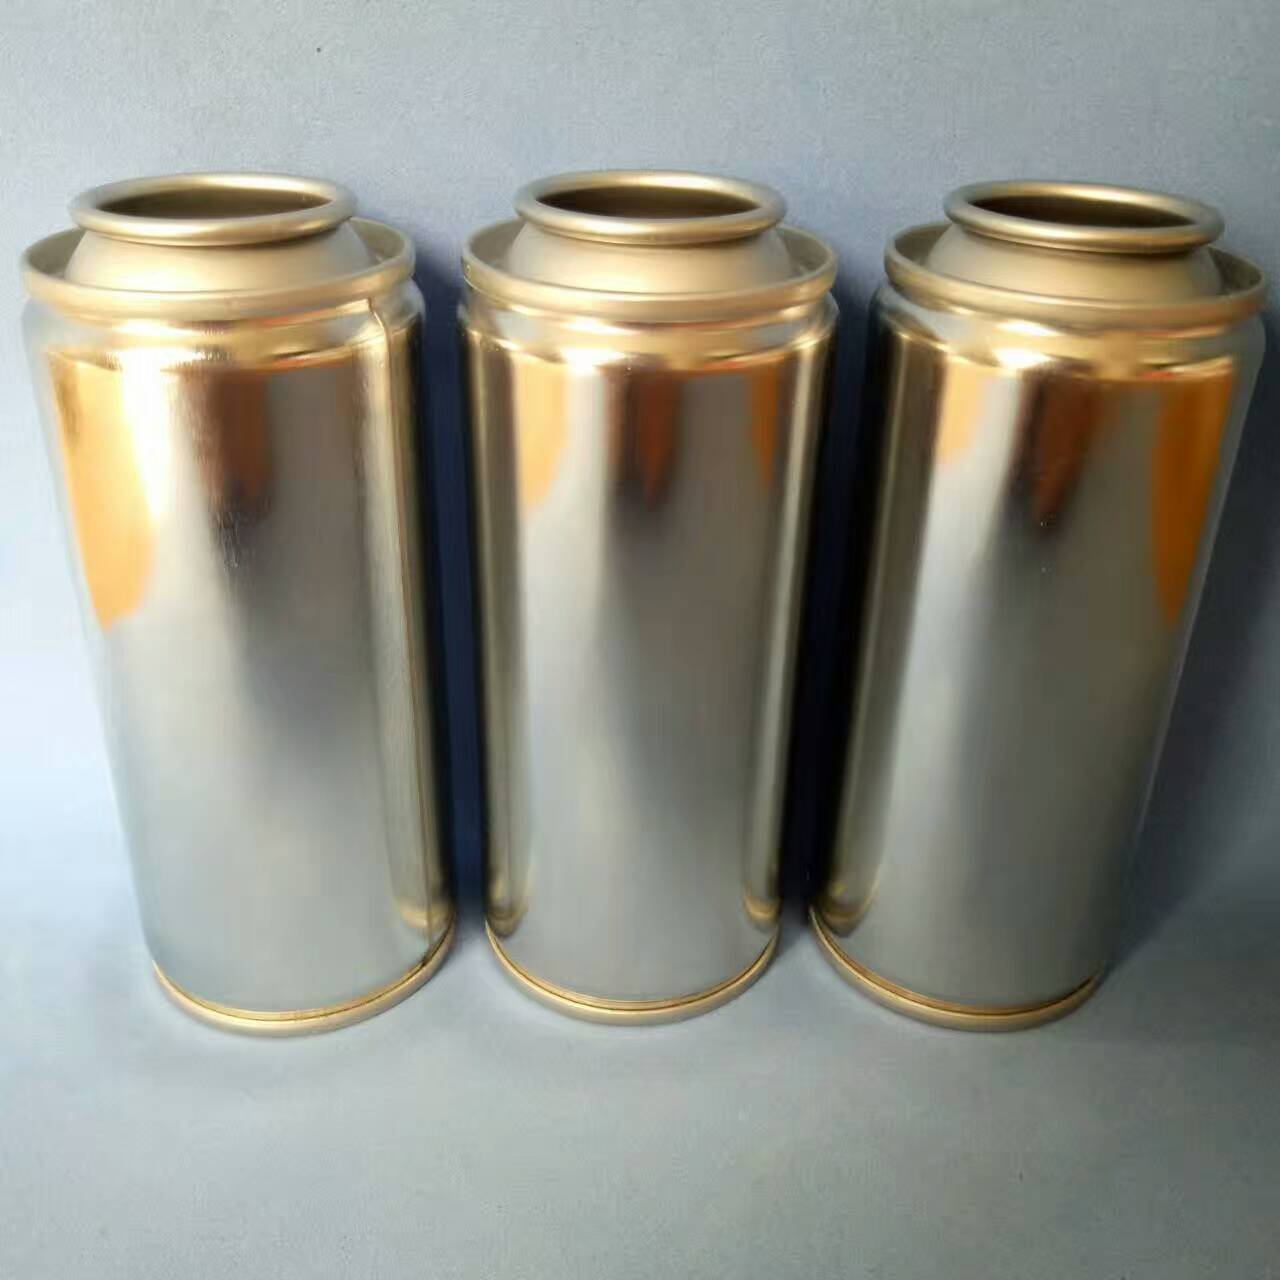 各种规格气雾剂罐 手喷漆罐 清洗剂罐 添加剂罐 喷雾剂铁罐